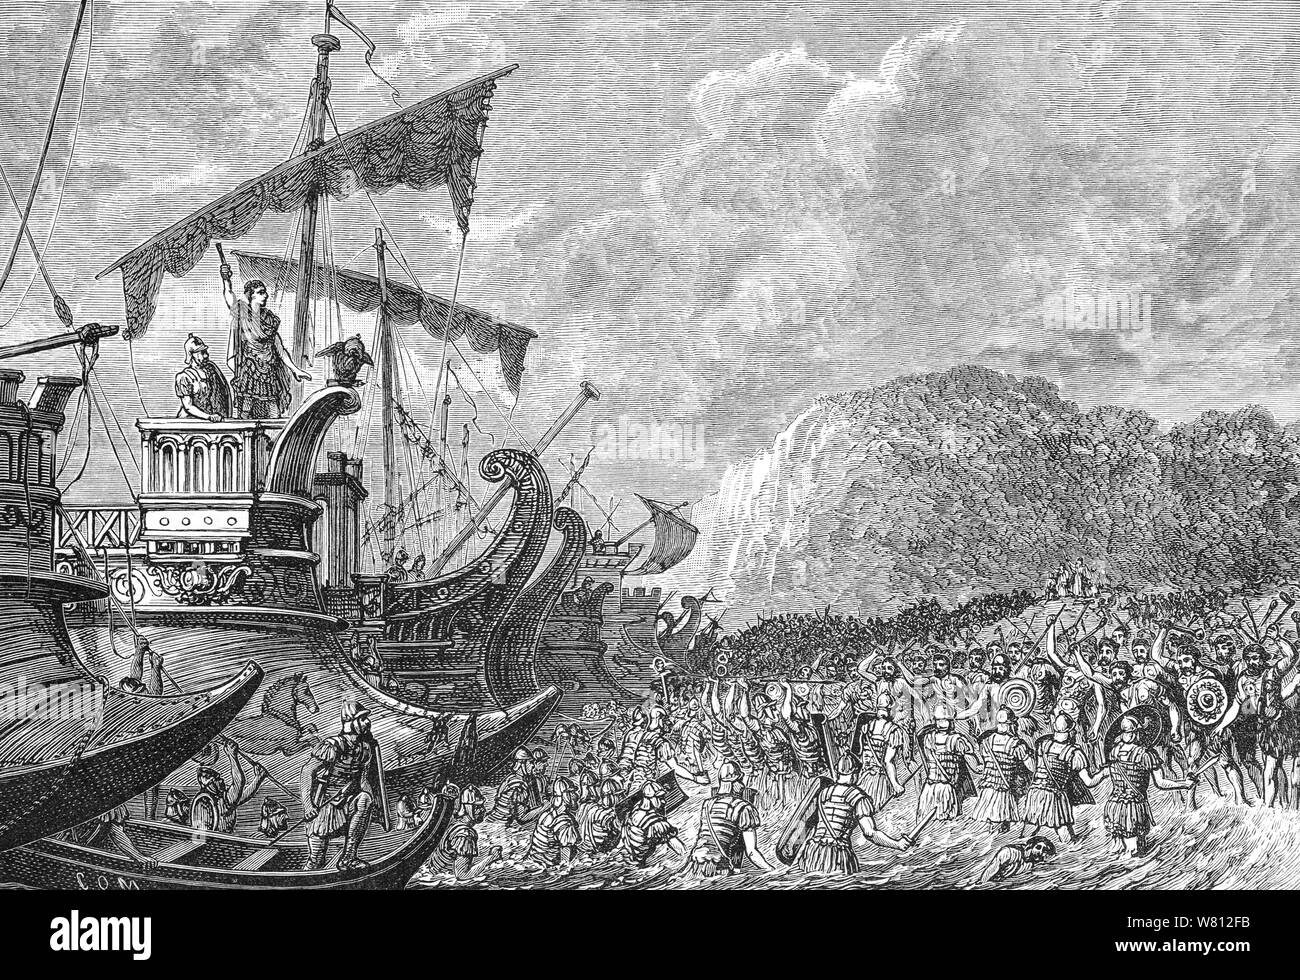 Nel 55 a.c. Giulio Cesare ha deciso di fare una spedizione in Gran Bretagna. Egli ha raccolto una flotta costituita da ottanta navi da trasporto, sufficiente per trasportare due legioni, che inizialmente ha cercato di atterrare a Dubris (Dover), un porto naturale identificato come un apposito luogo di atterraggio. Tuttavia, quando egli giunse in vista di Riva, il ammassato delle forze inglesi raccolte sulle colline e scogliere lo dissuase dal momento dell'atterraggio e la flotta ha navigato lungo la costa per una spiaggia aperta. Avente stato inseguito per tutto il tragitto lungo la costa dal British cavalleria e carri, lo sbarco si era opposto. Per peggiorare le cose, Foto Stock